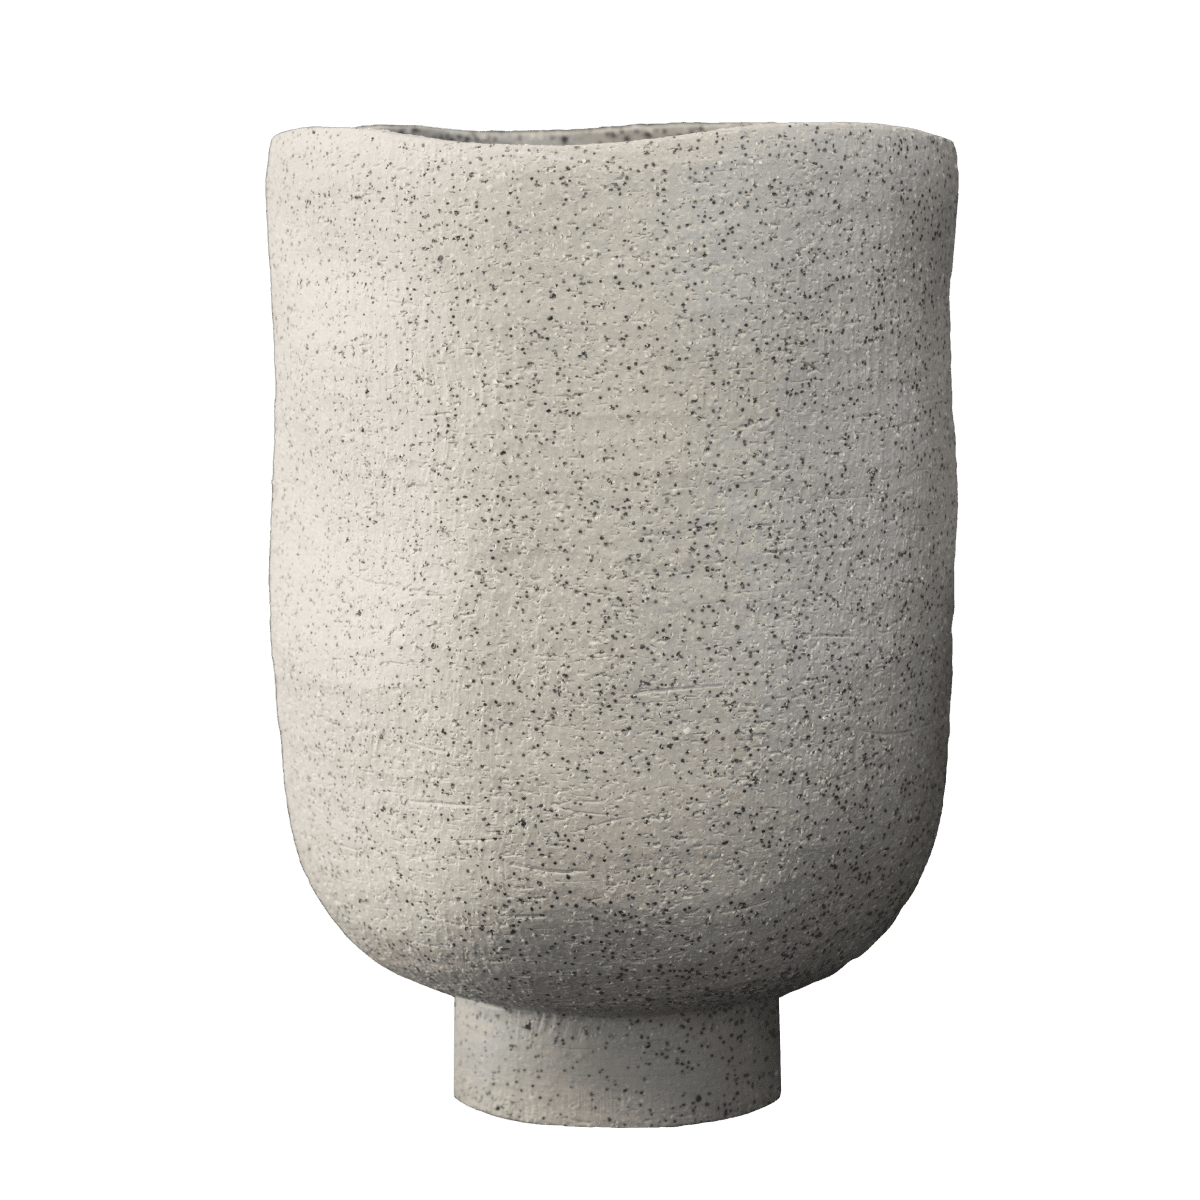 Keramikvase H28cm, sandfarben